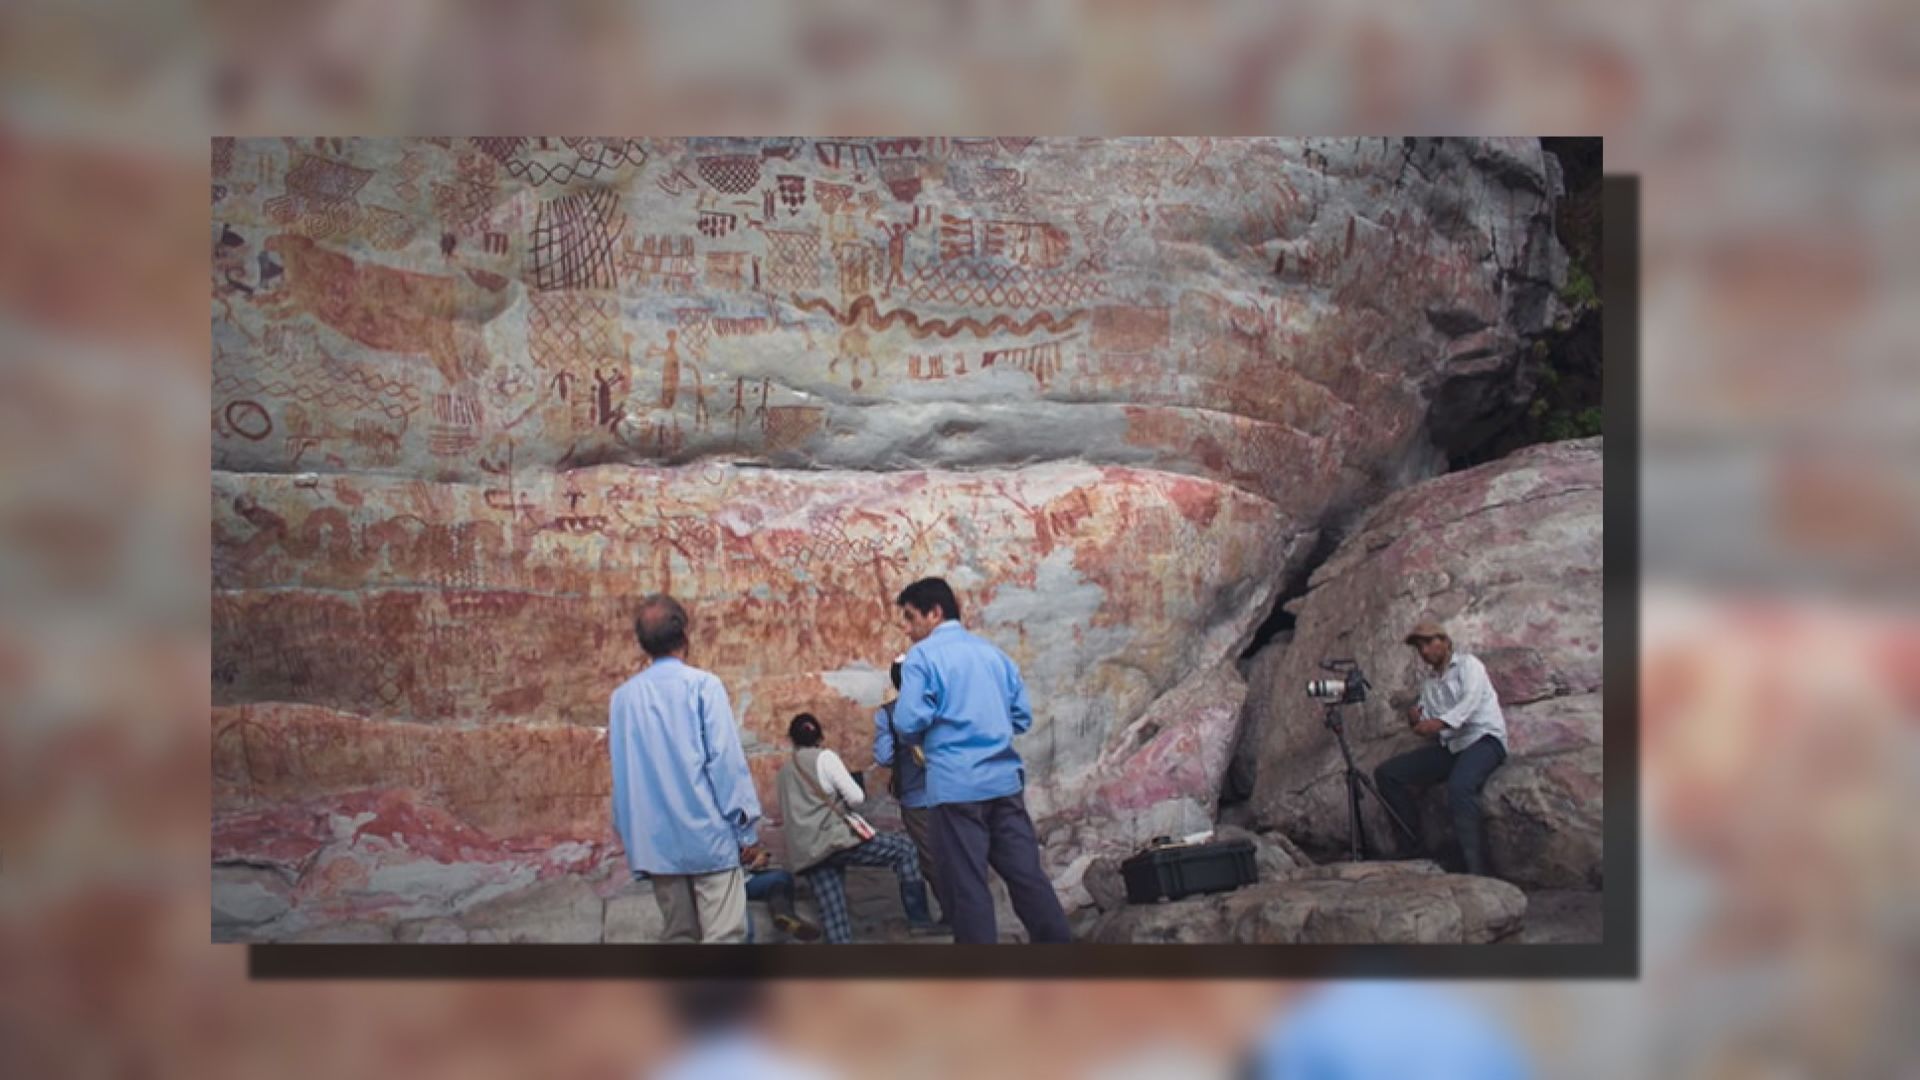 【環球薈報】亞馬遜雨林發現1.2萬年前巨型岩石壁畫